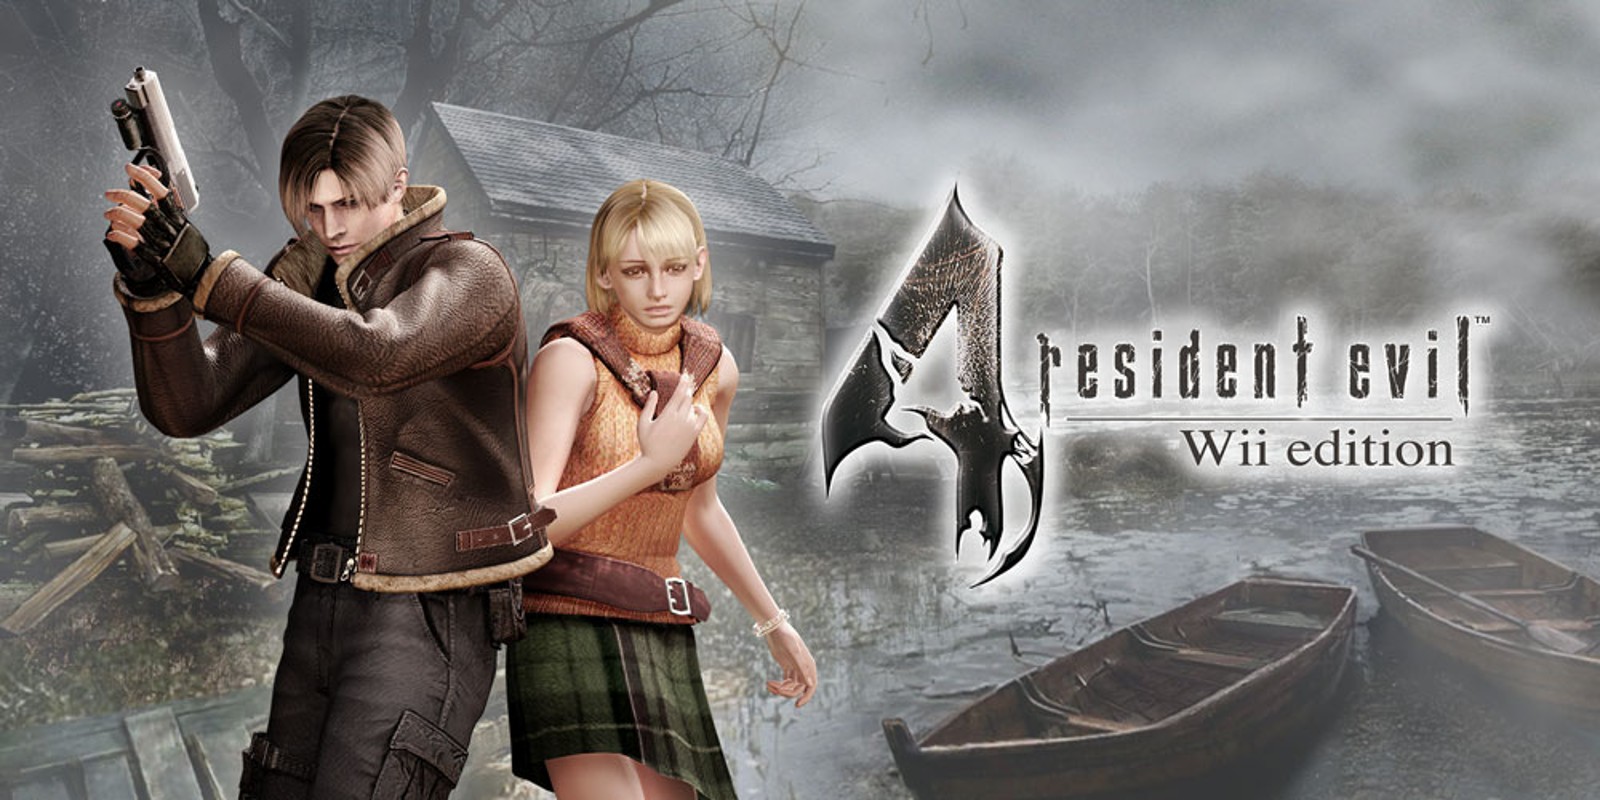 Прохождение игры Resident Evil 4 - Ultimate HD Edition # 28 (Русская версия игры) PC - Ver. HD Full.